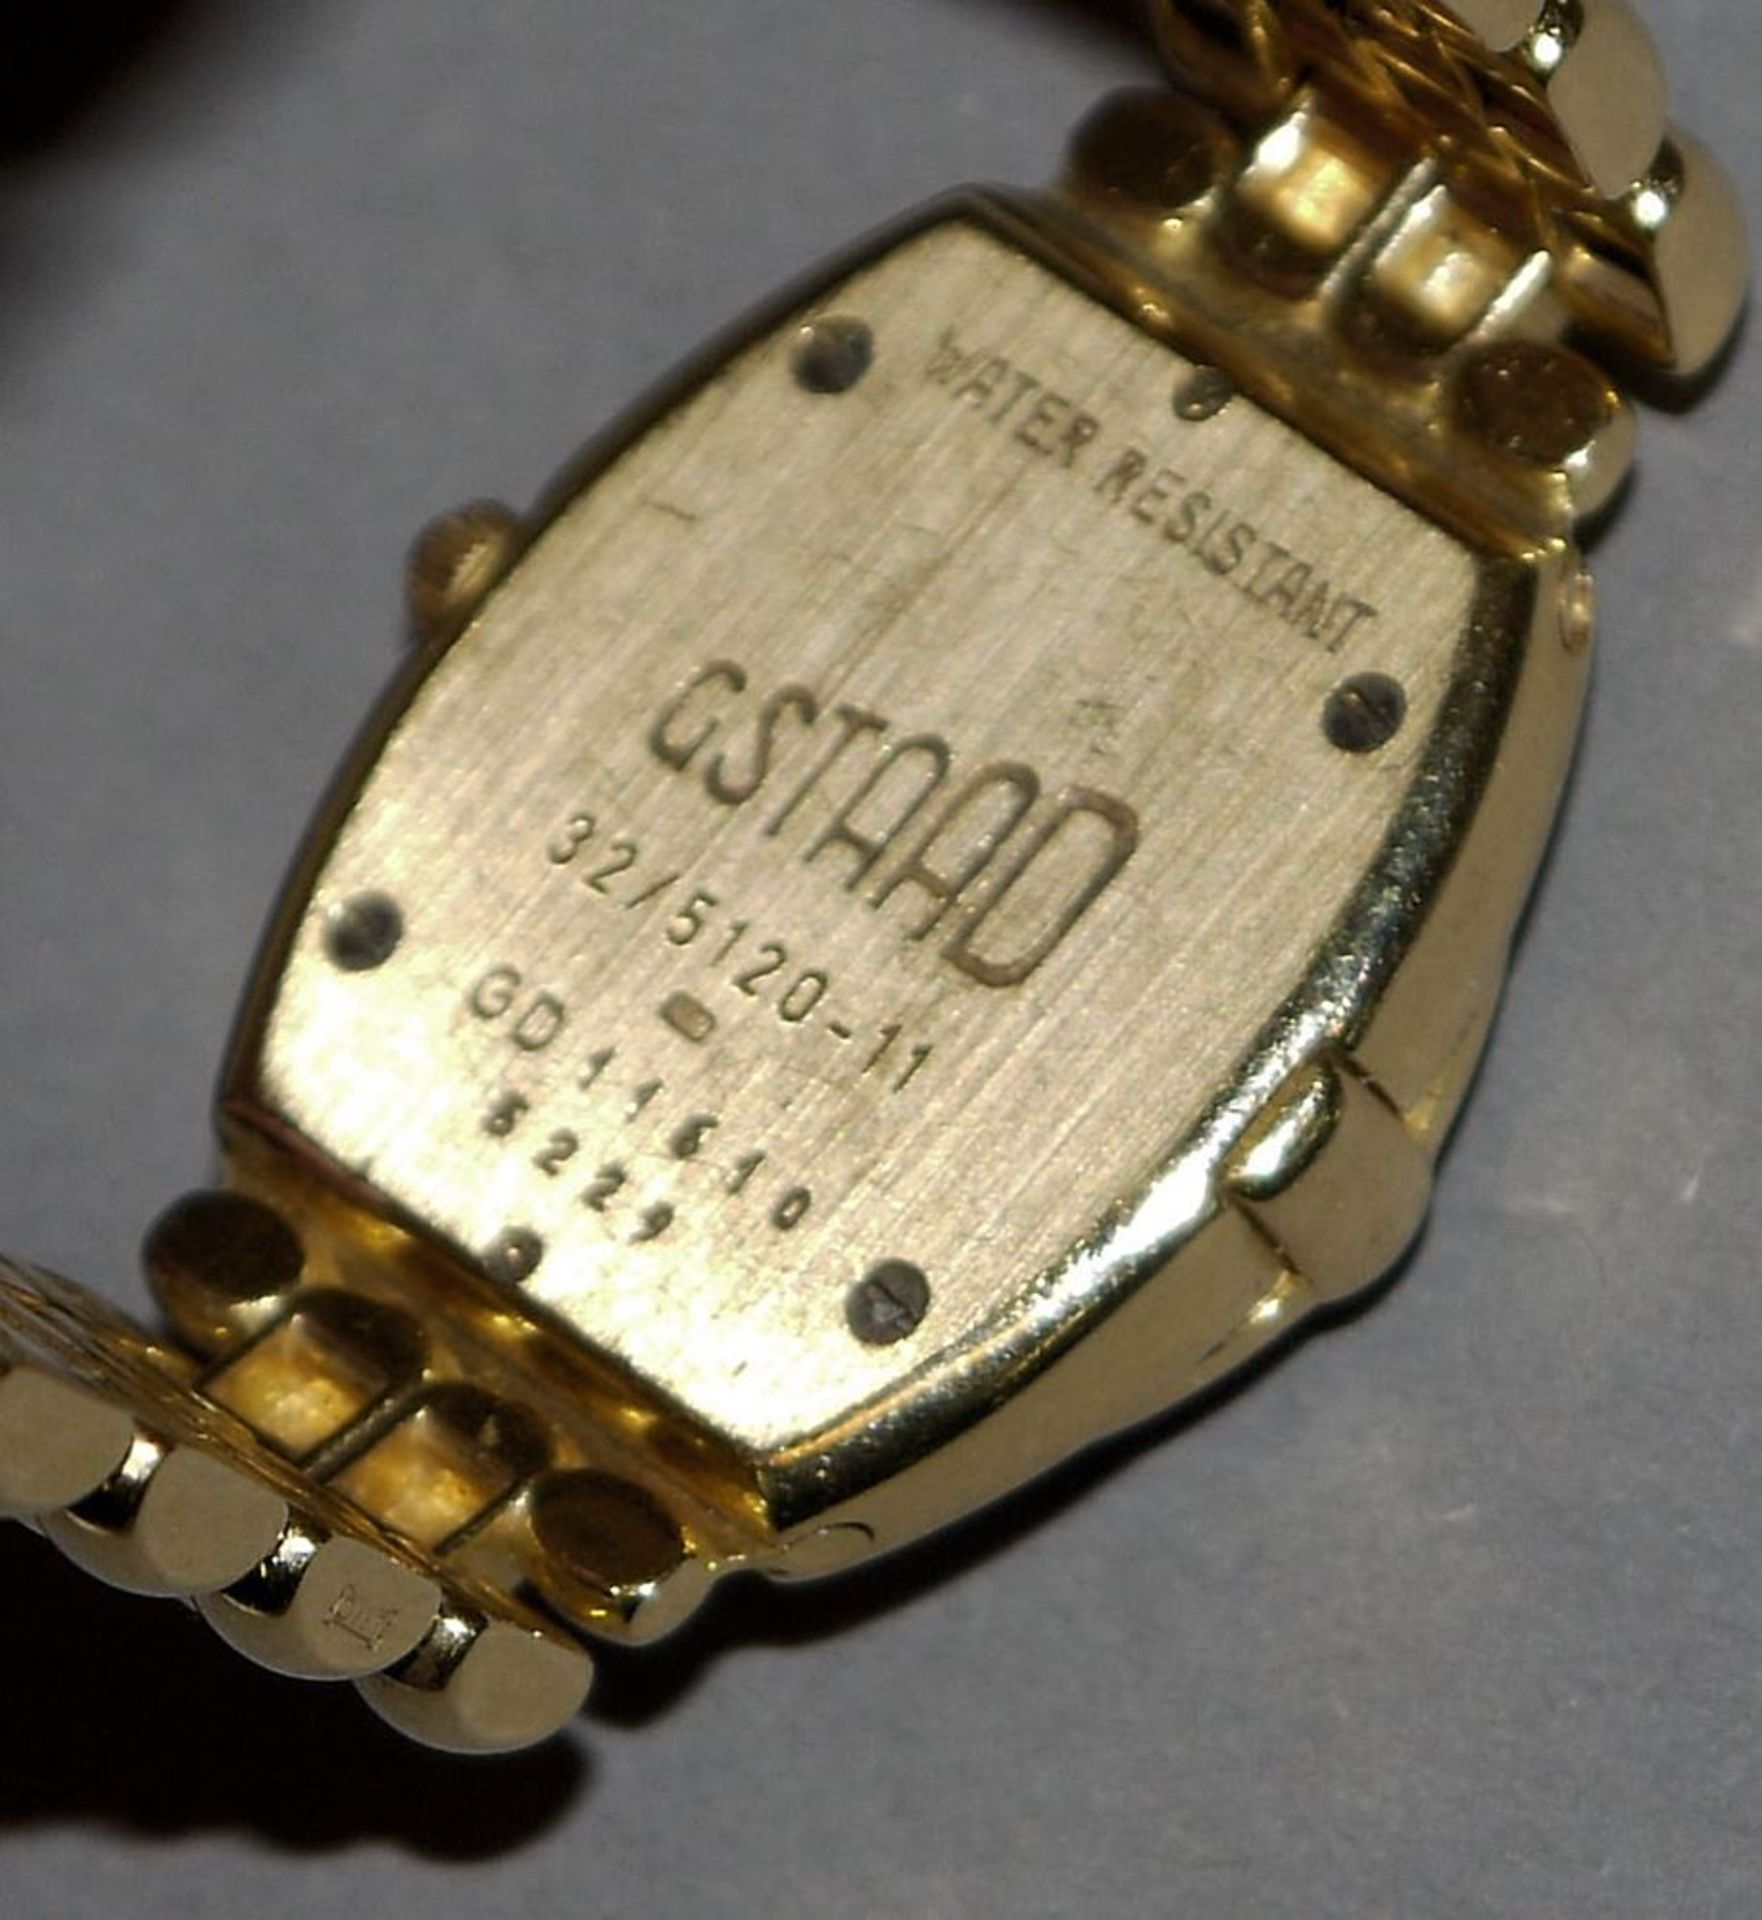 Damenarmbanduhr Chopard Gstaad mit Brillanten, Gold mit Garantie-Urkunde von 19 - Image 2 of 3